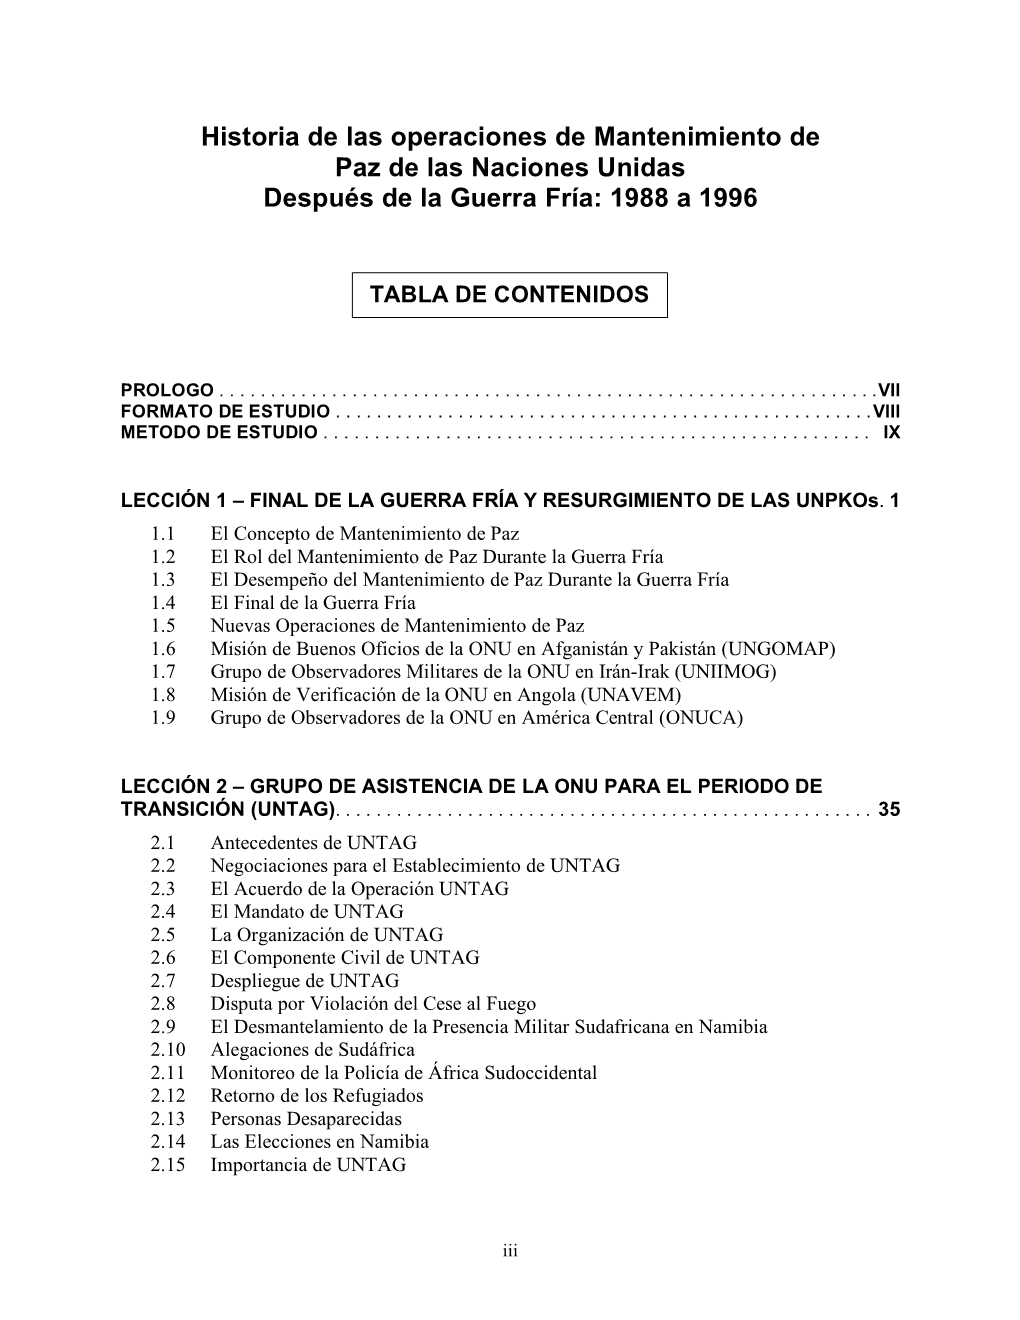 Historia De Las Operaciones De Mantenimiento 1988-1996